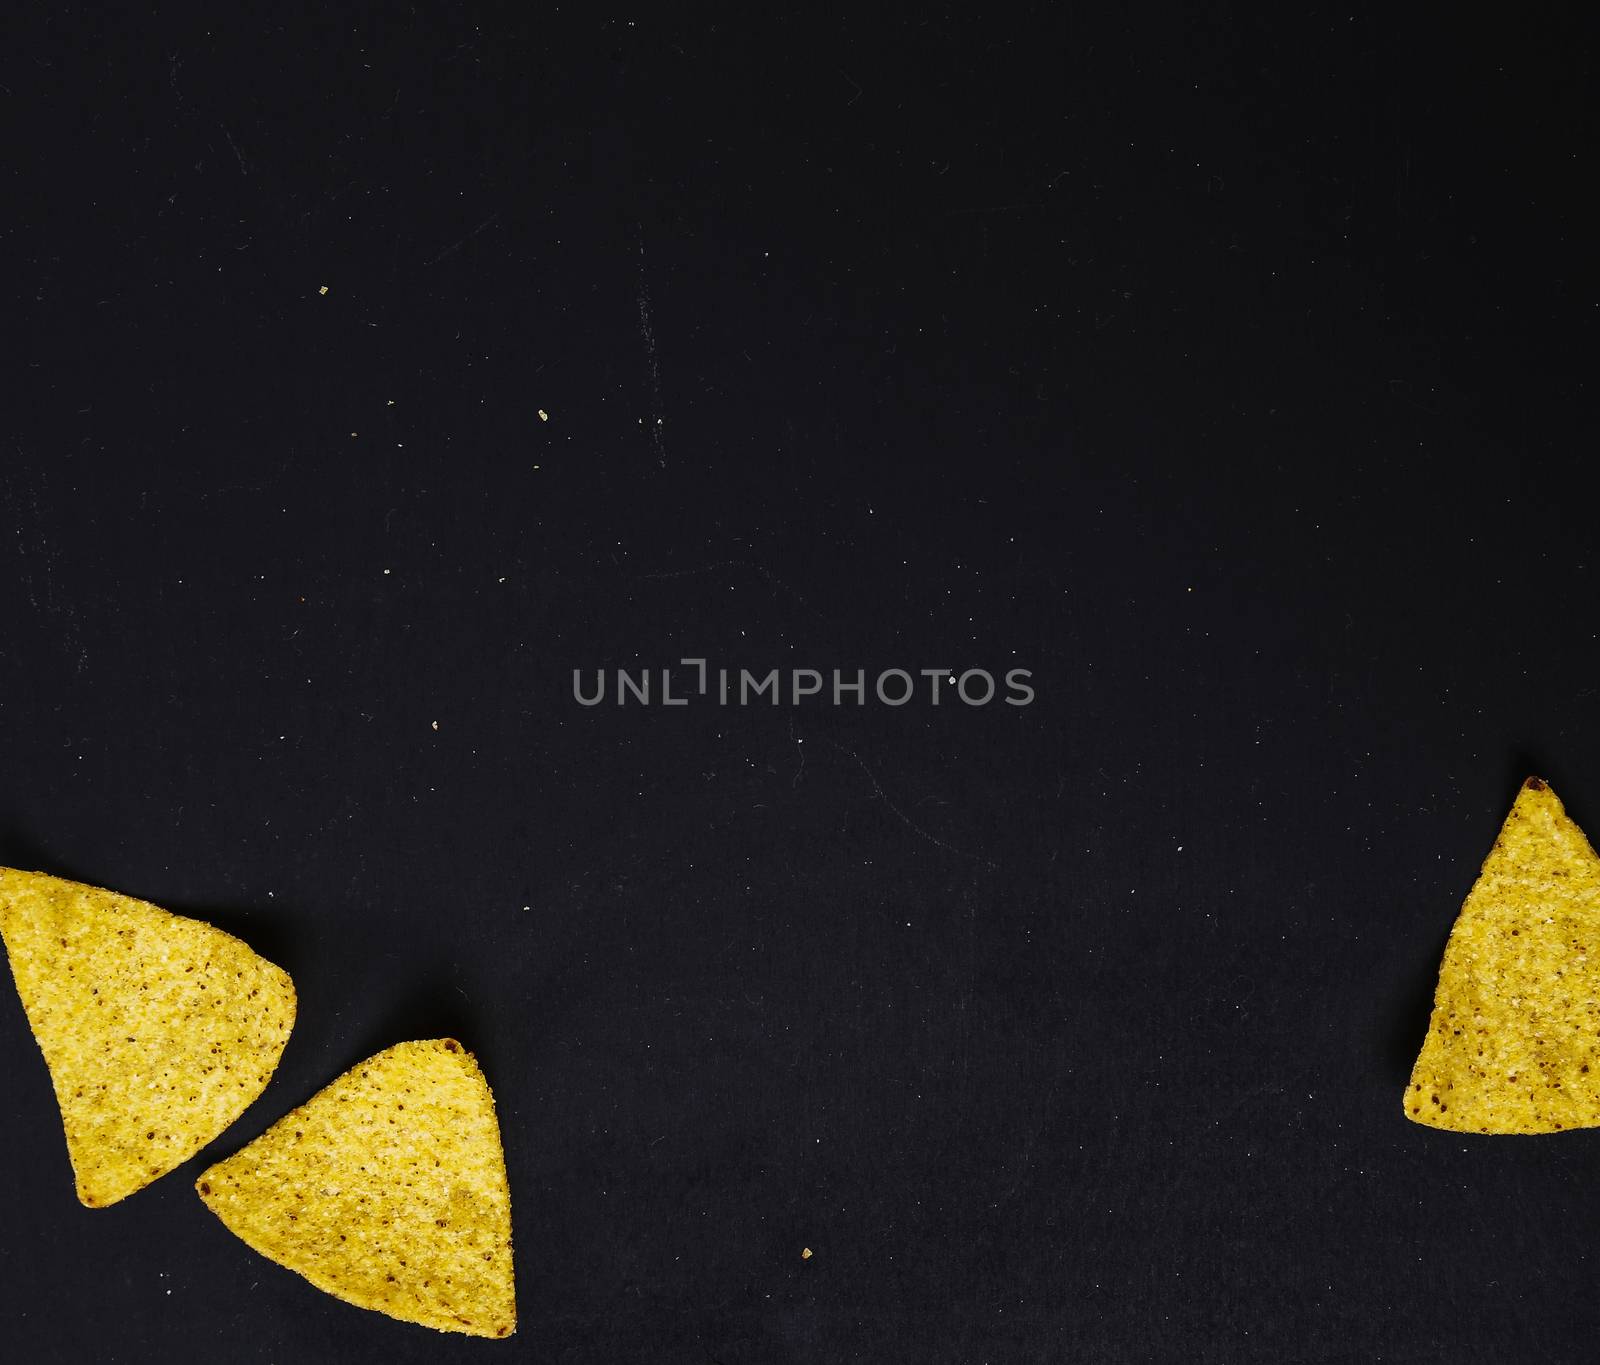 Potato chips by rufatjumali